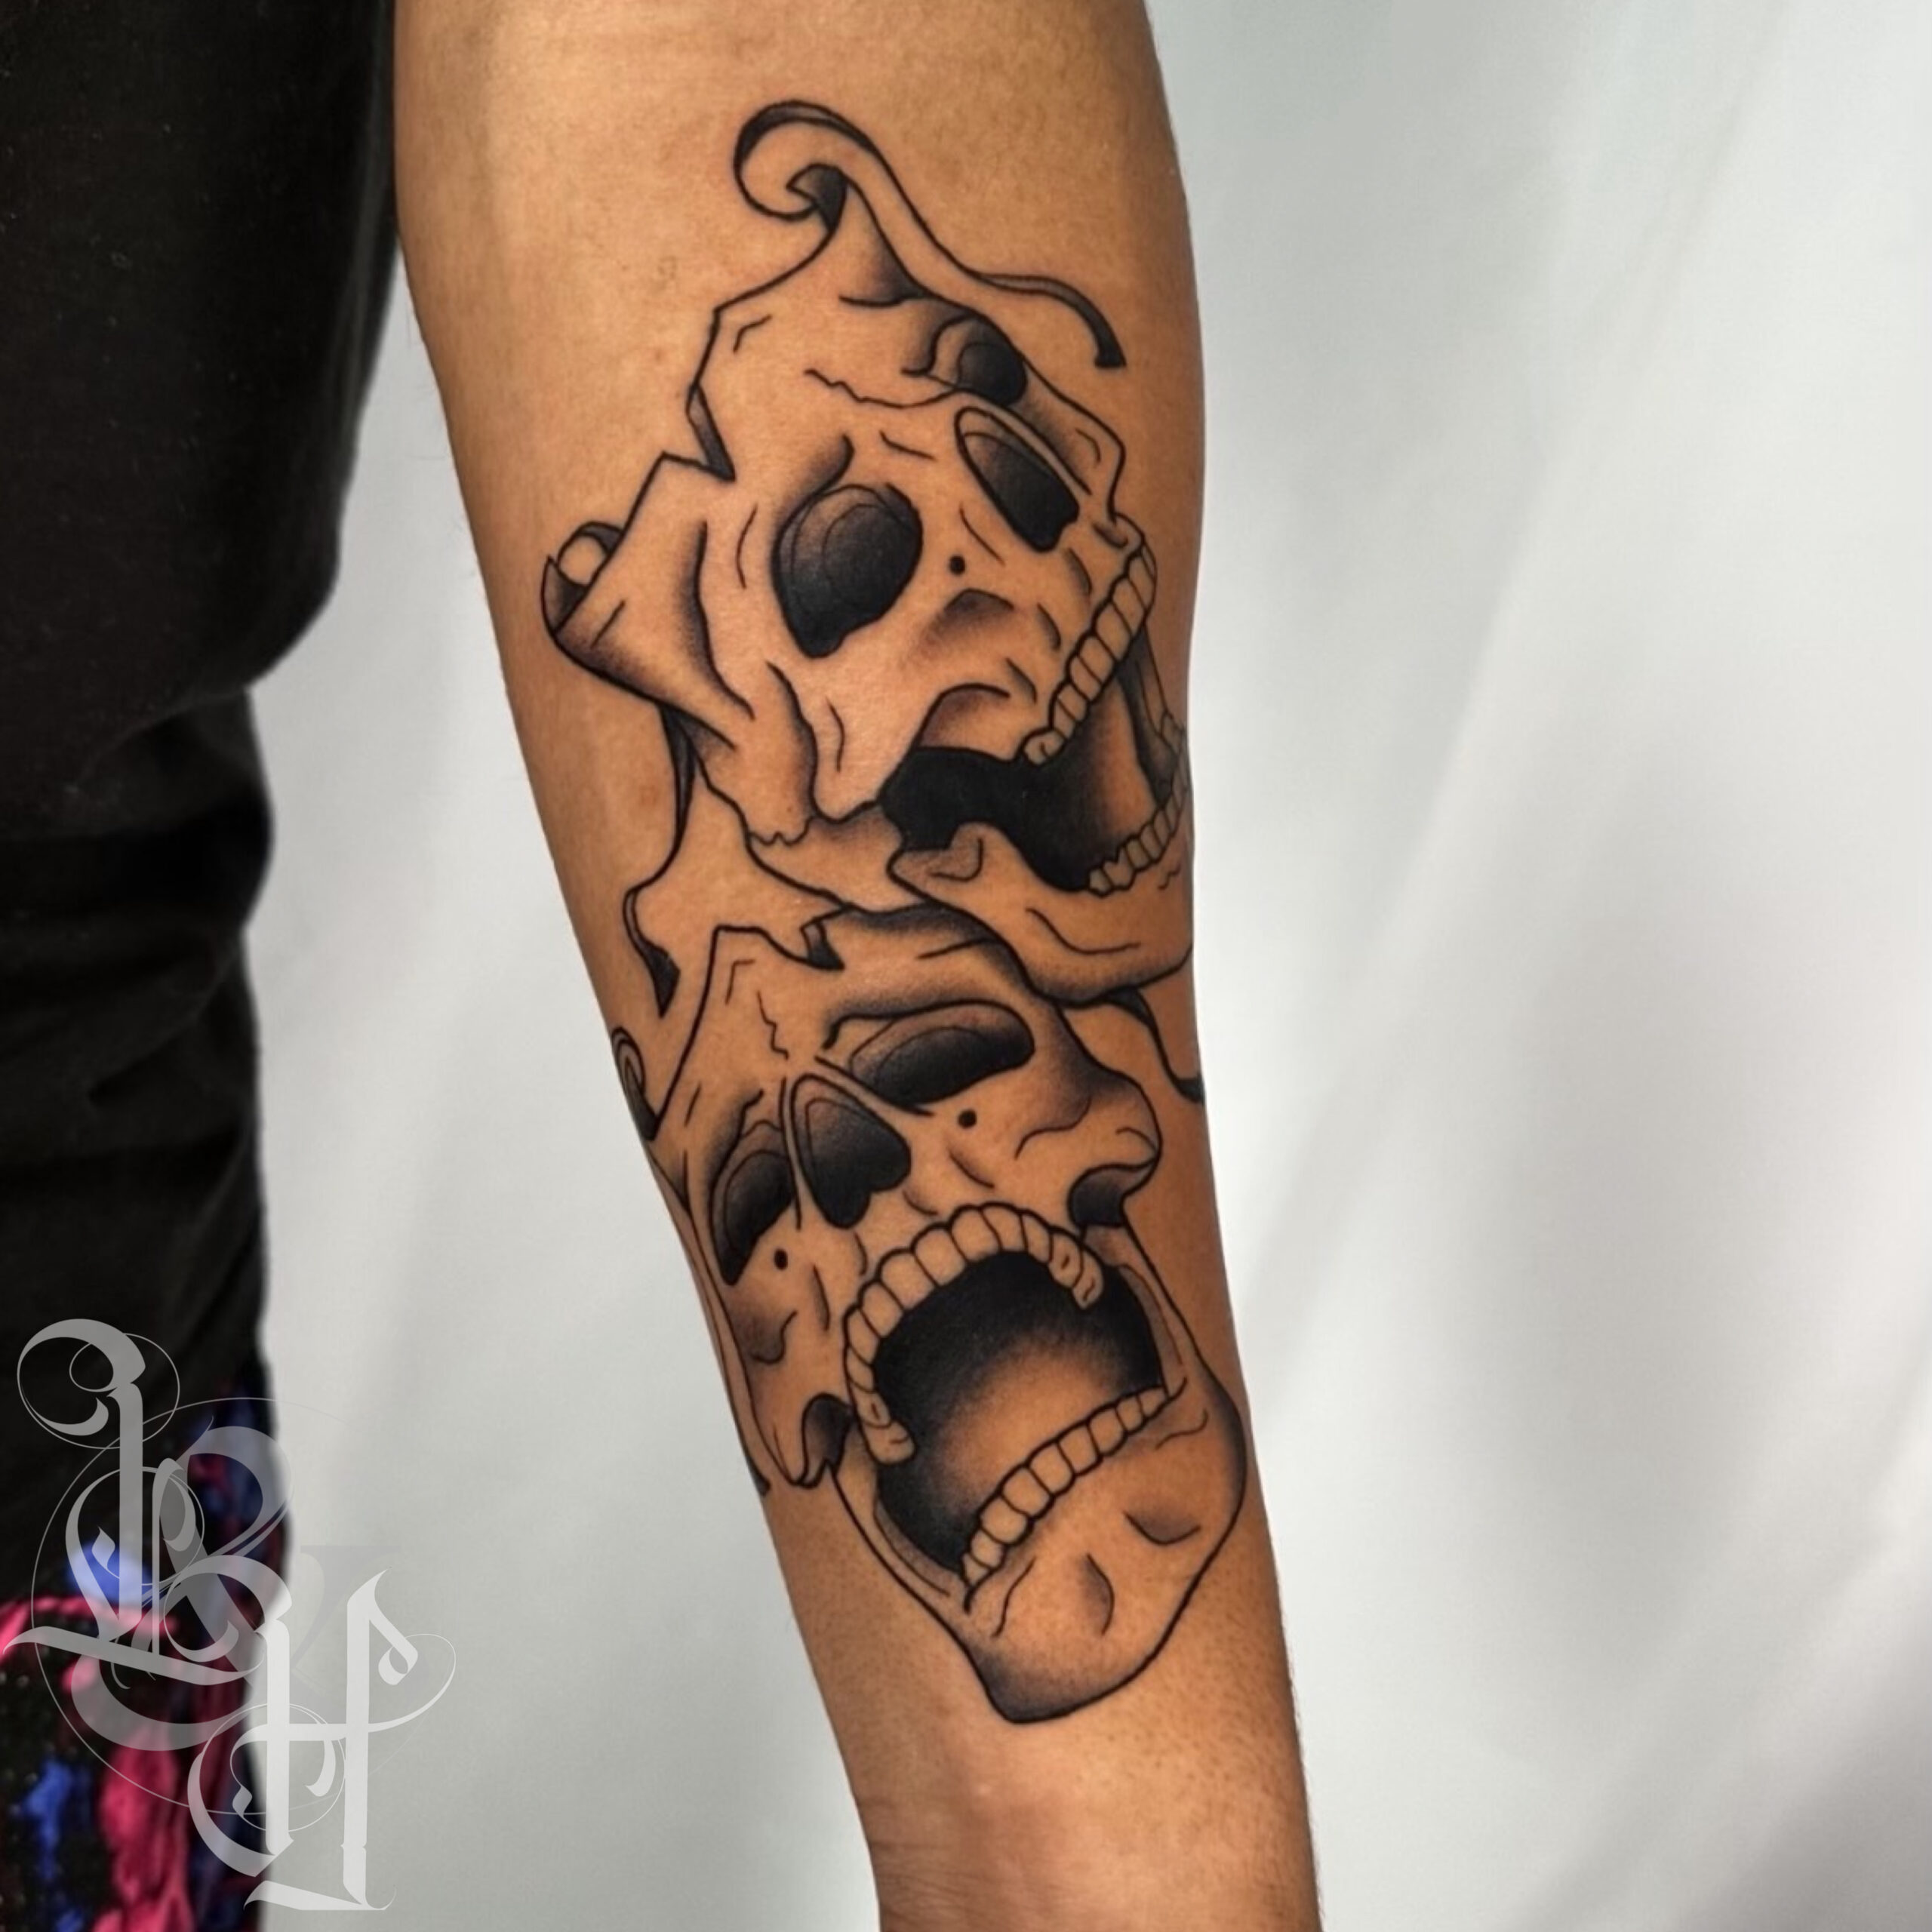 skeleton man tattoo smiling